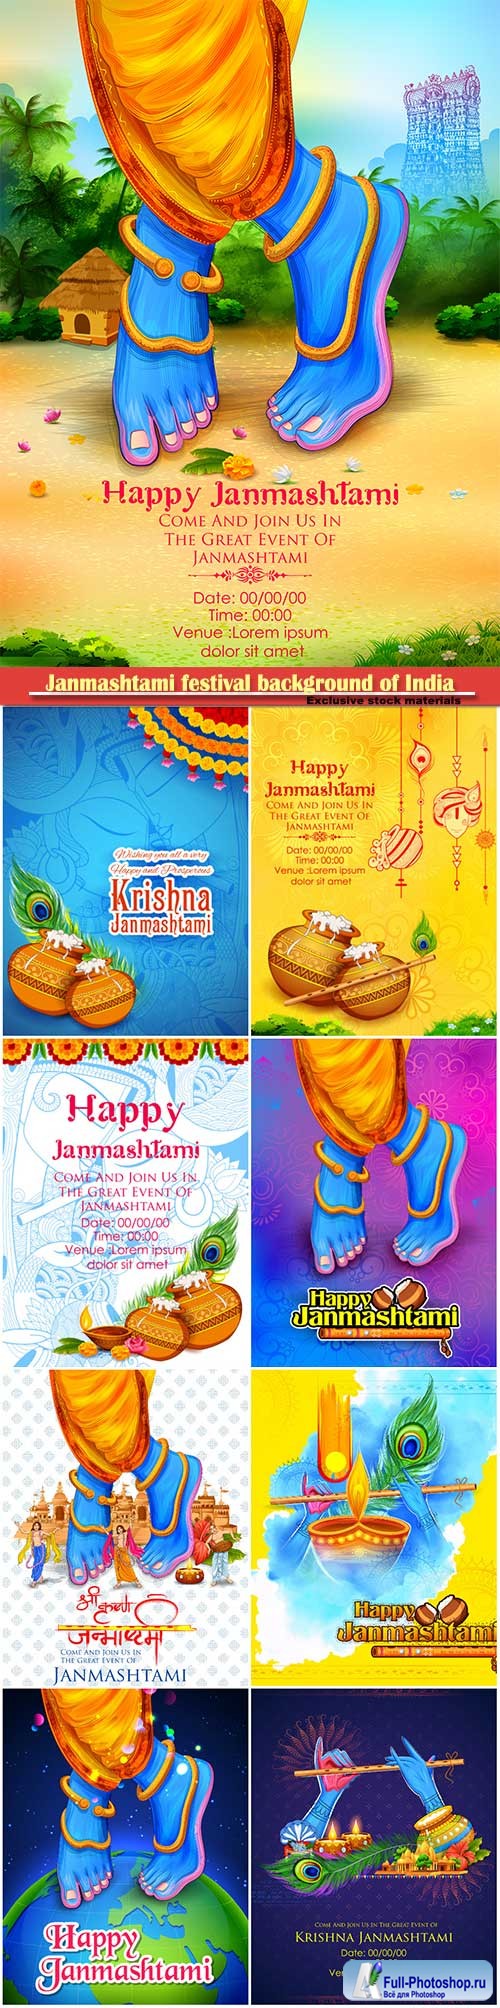 Illustration of dahi handi celebration in Happy Janmashtami festival background of India